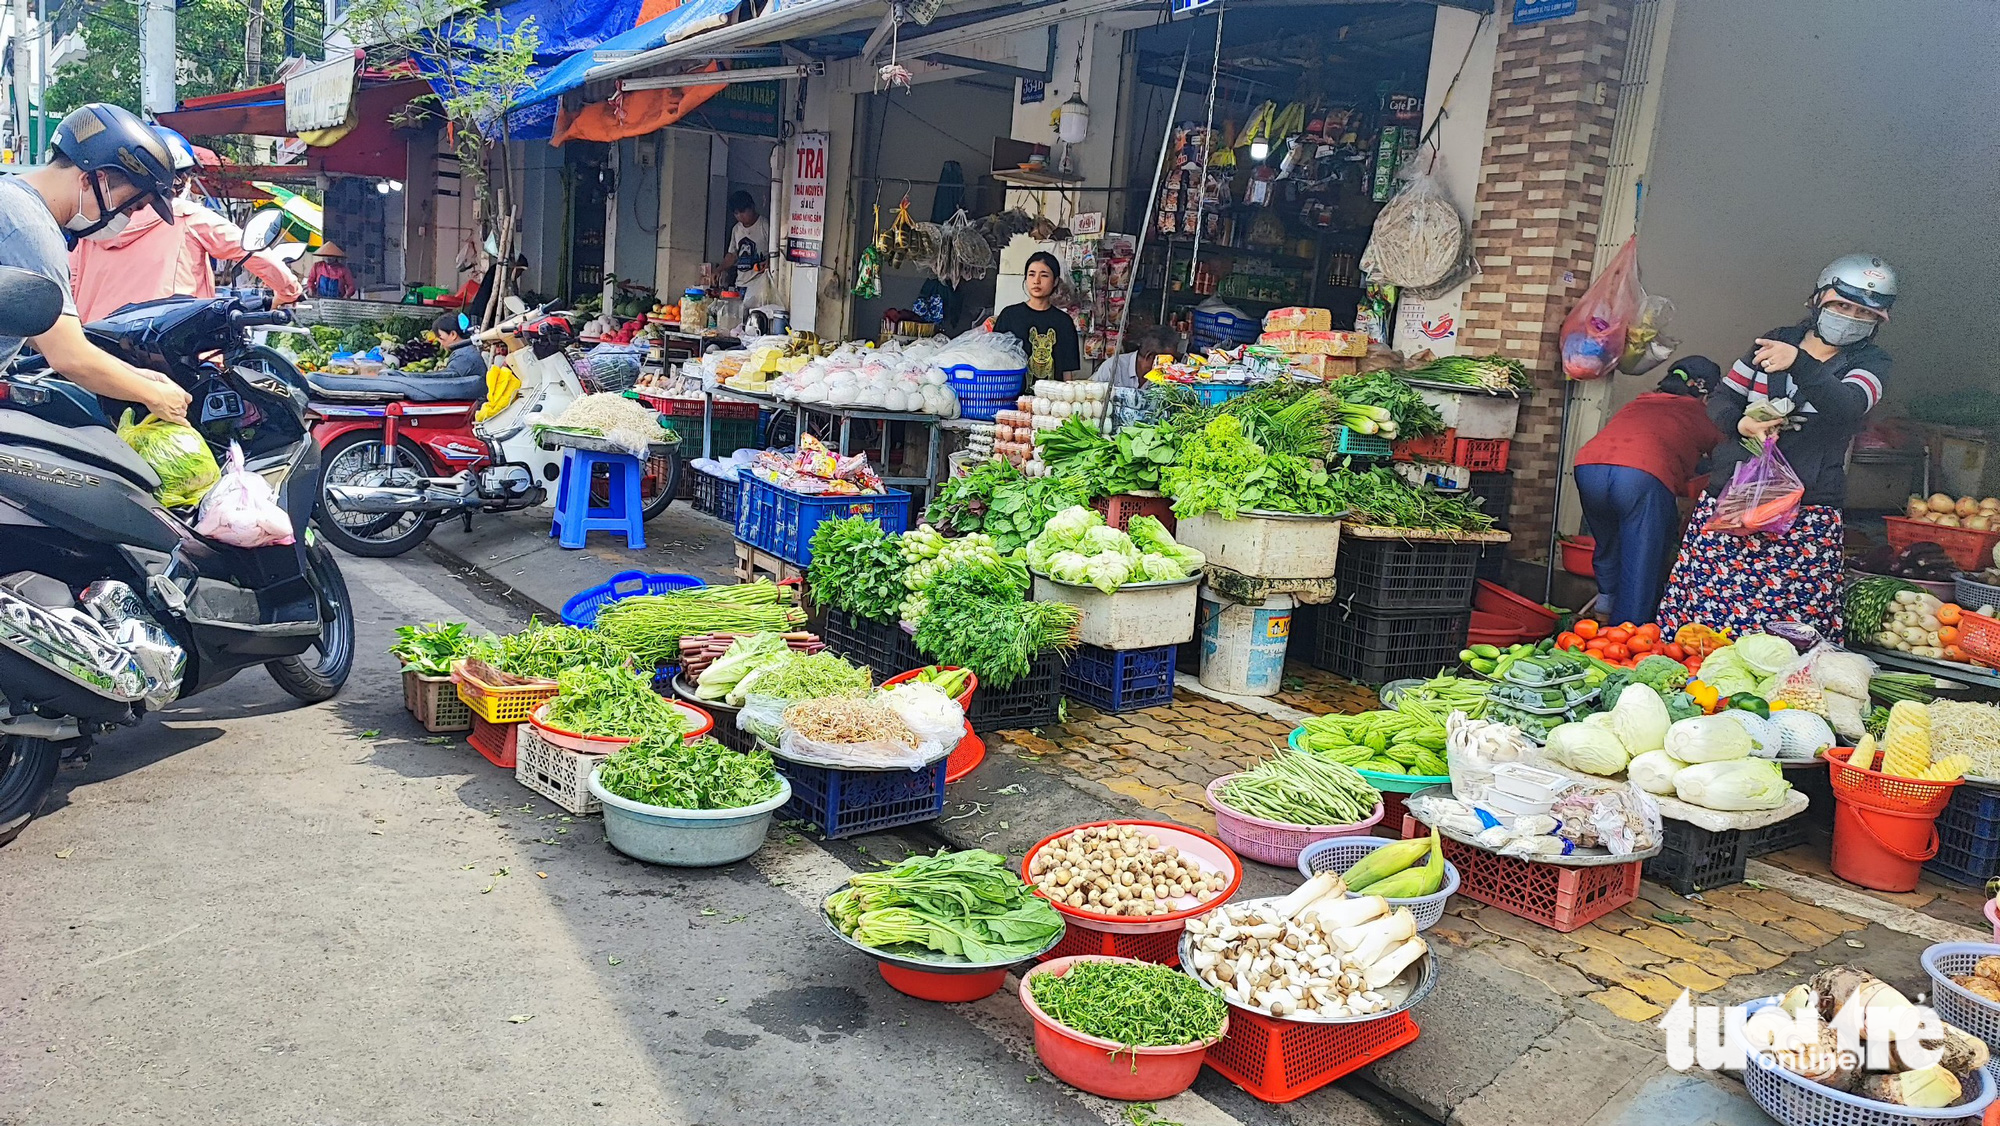 Sáng 29-4, hàng hoá tại một chợ lẻ trên đường Nguyễn Xí (Q.Bình Thành) khá dồi dào nhưng không có quá đông khách mua 